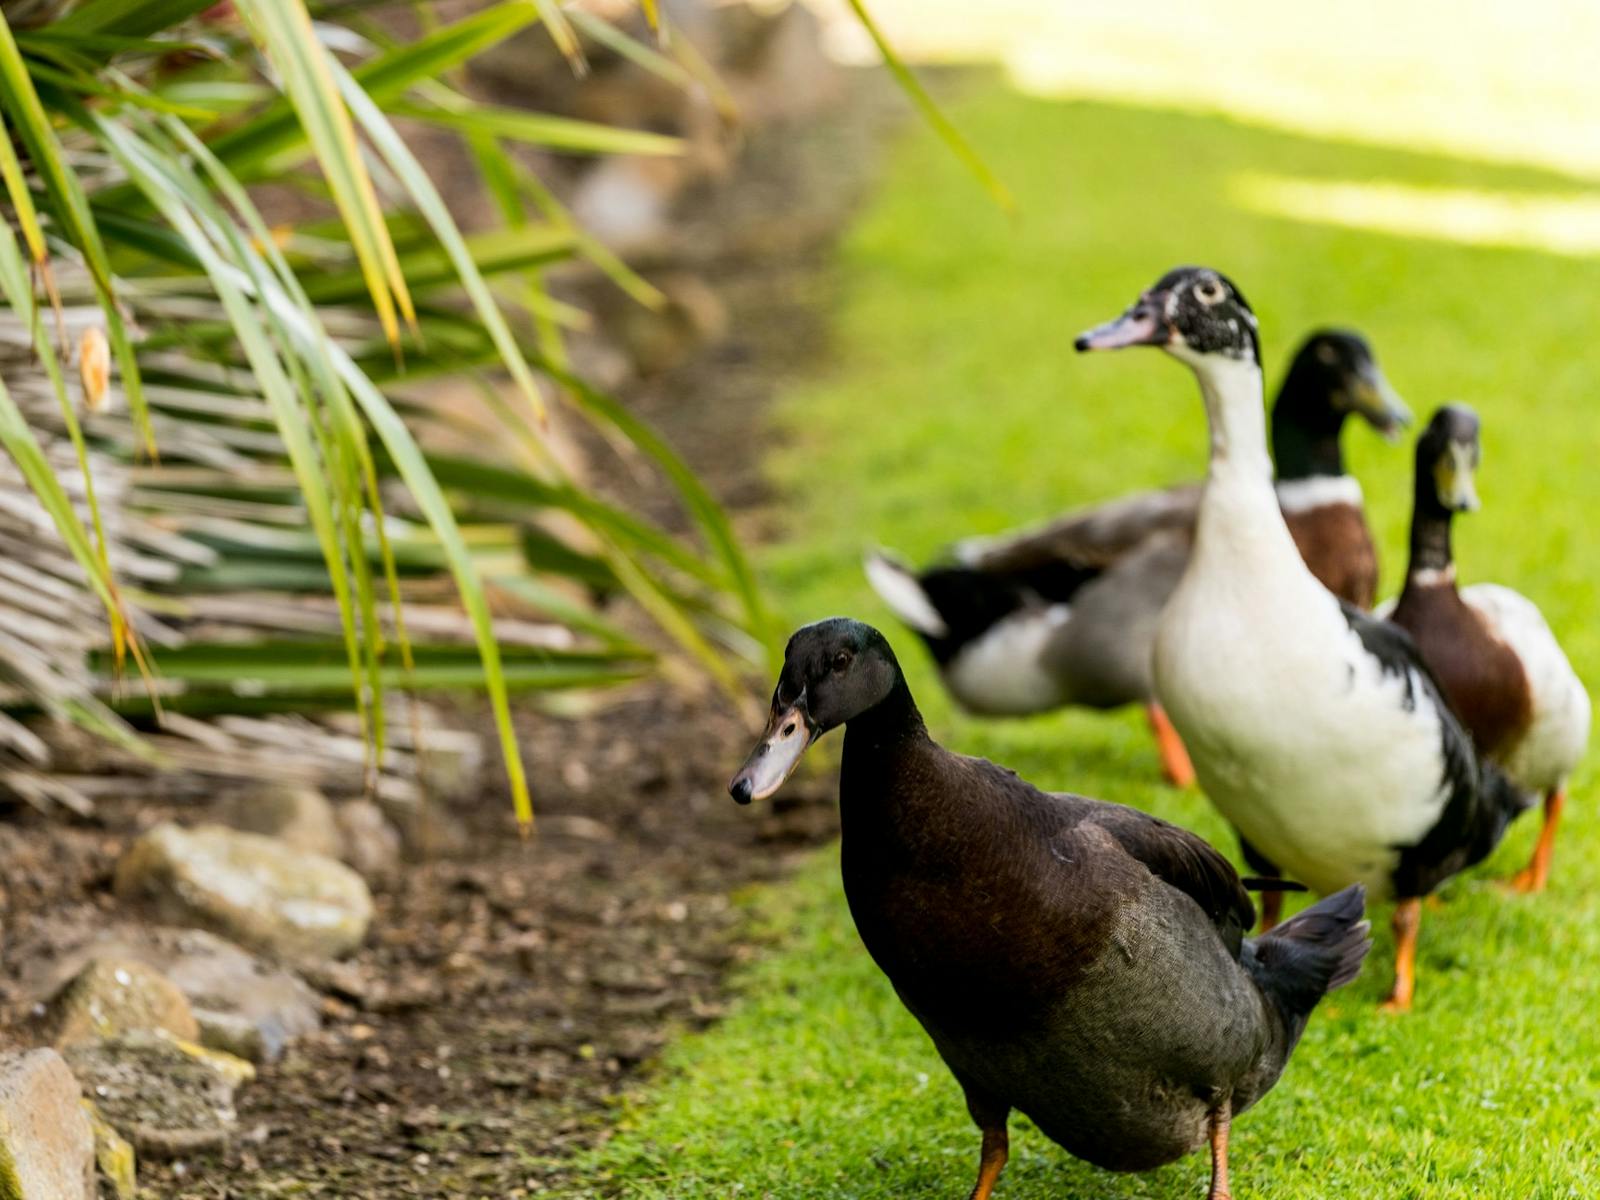 Ducks on green grass